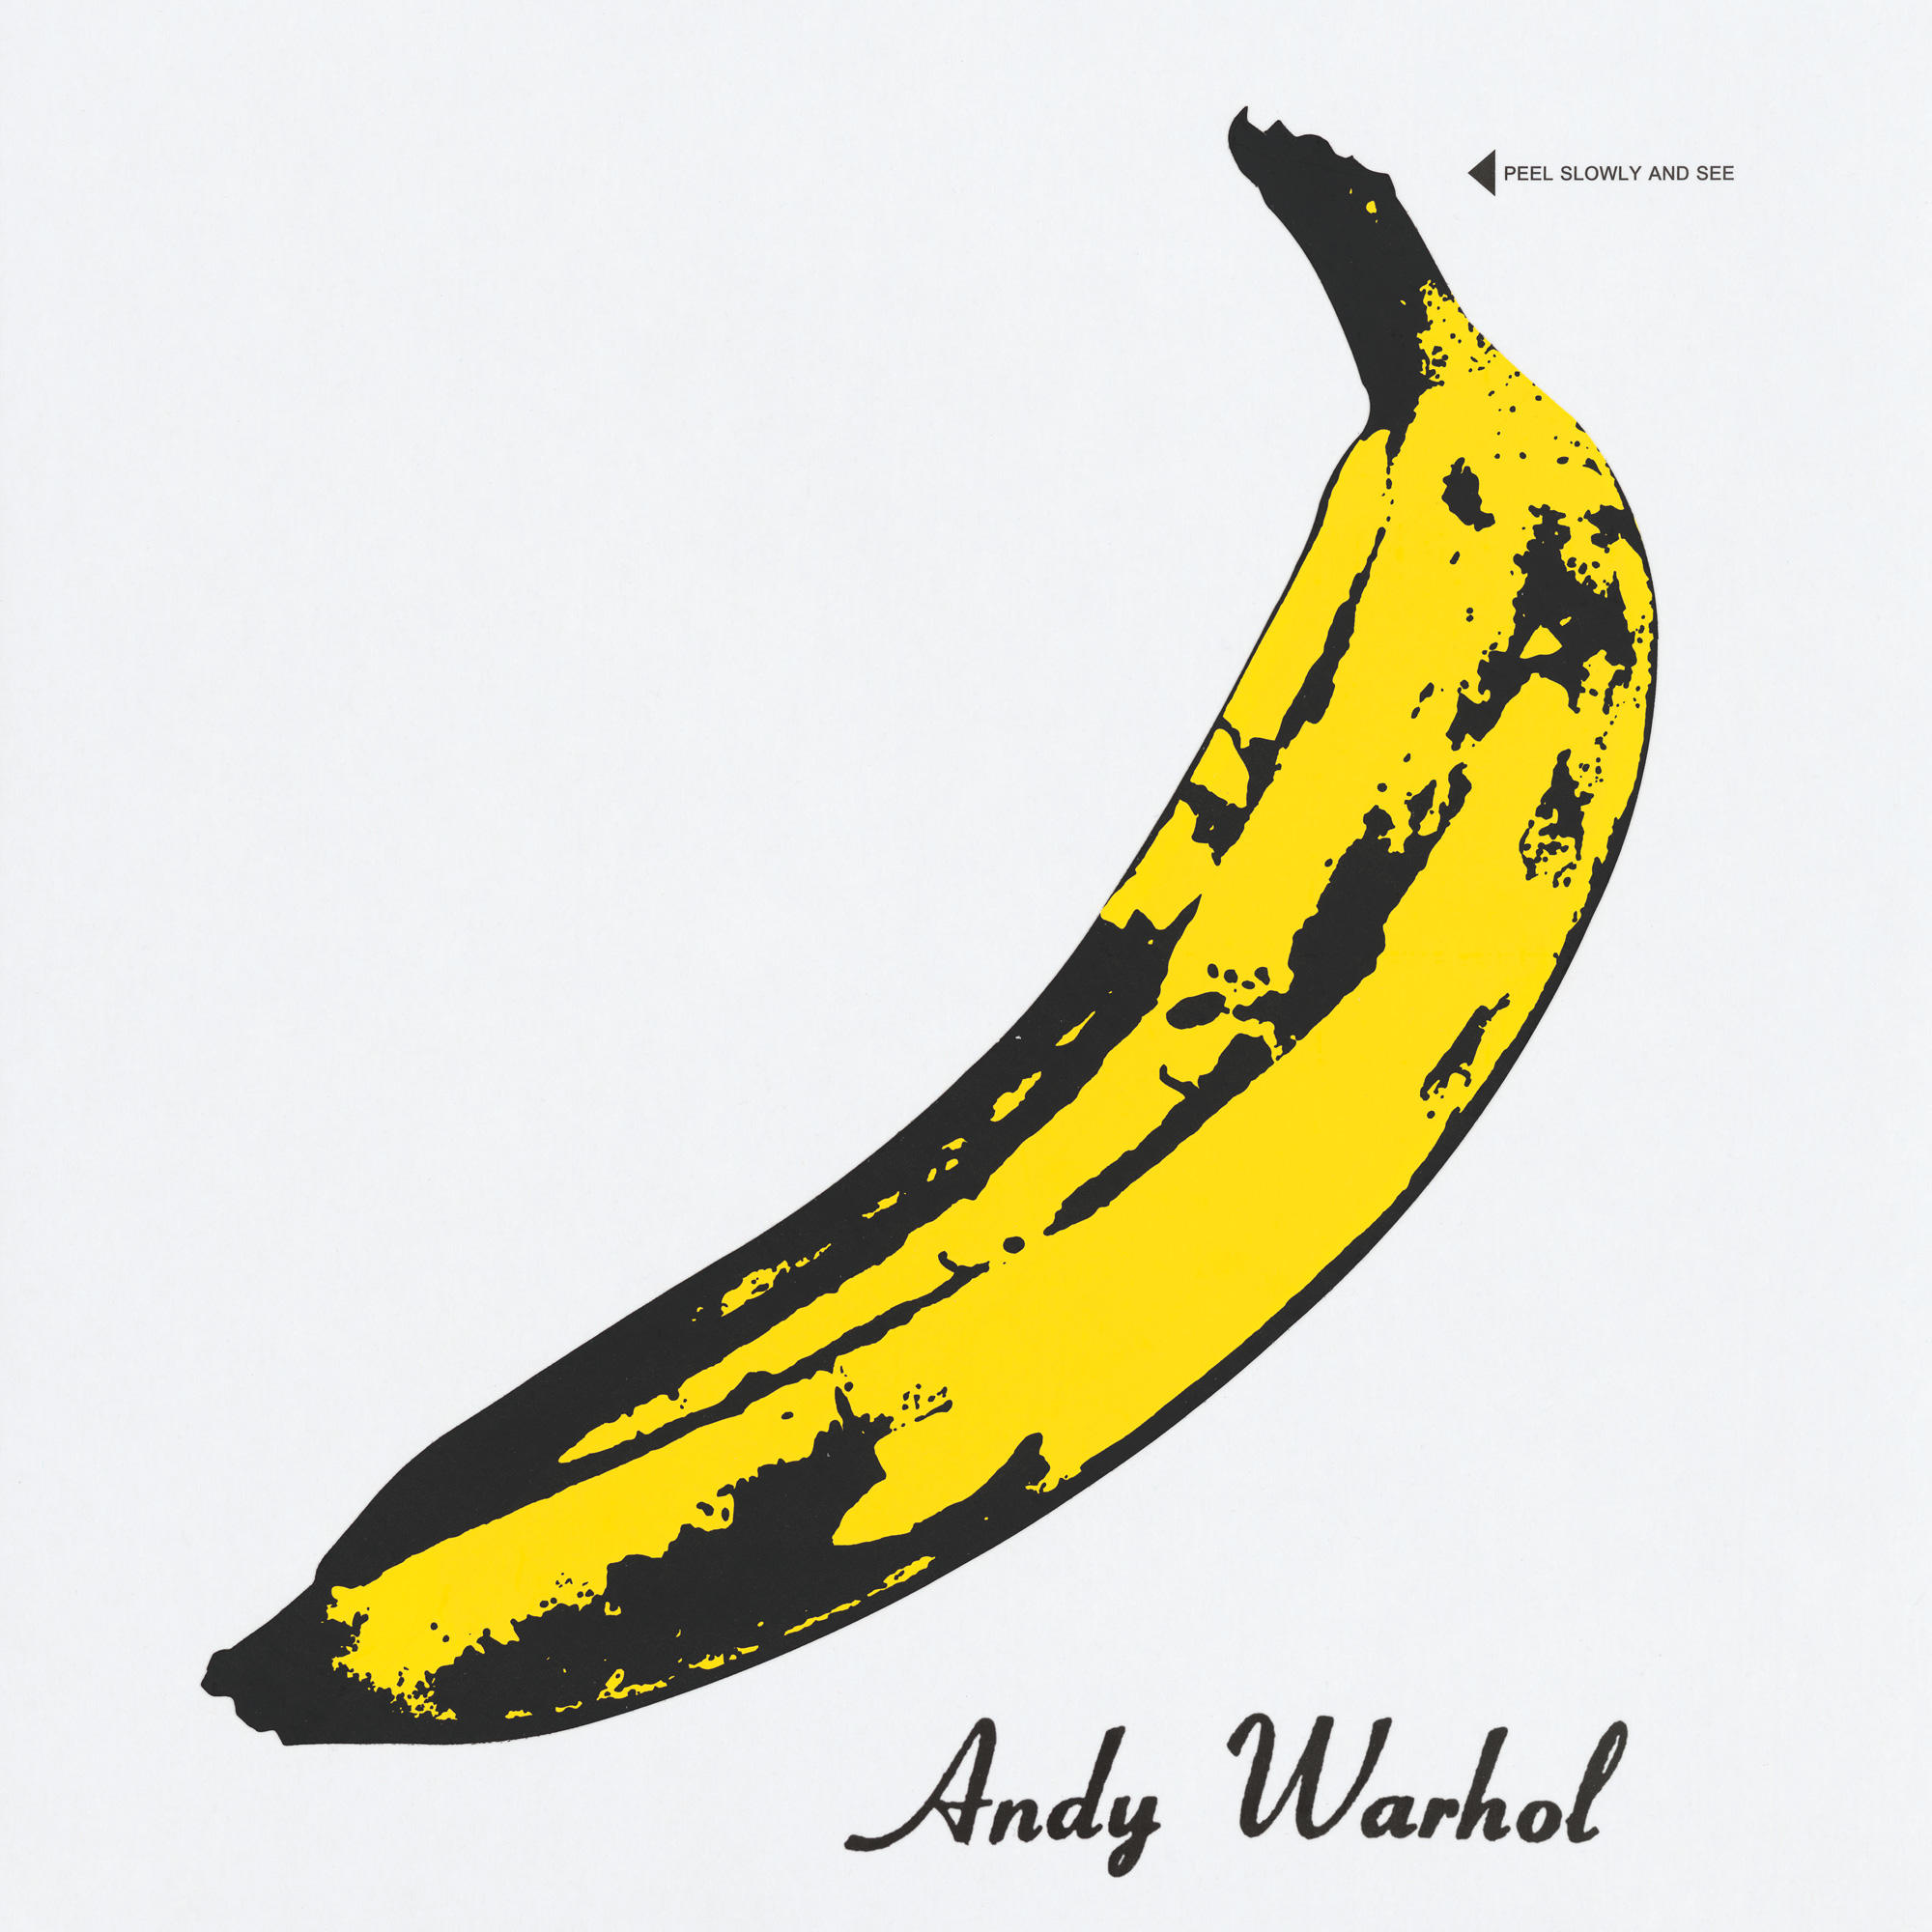 "Velvet Underground and Nico" cover